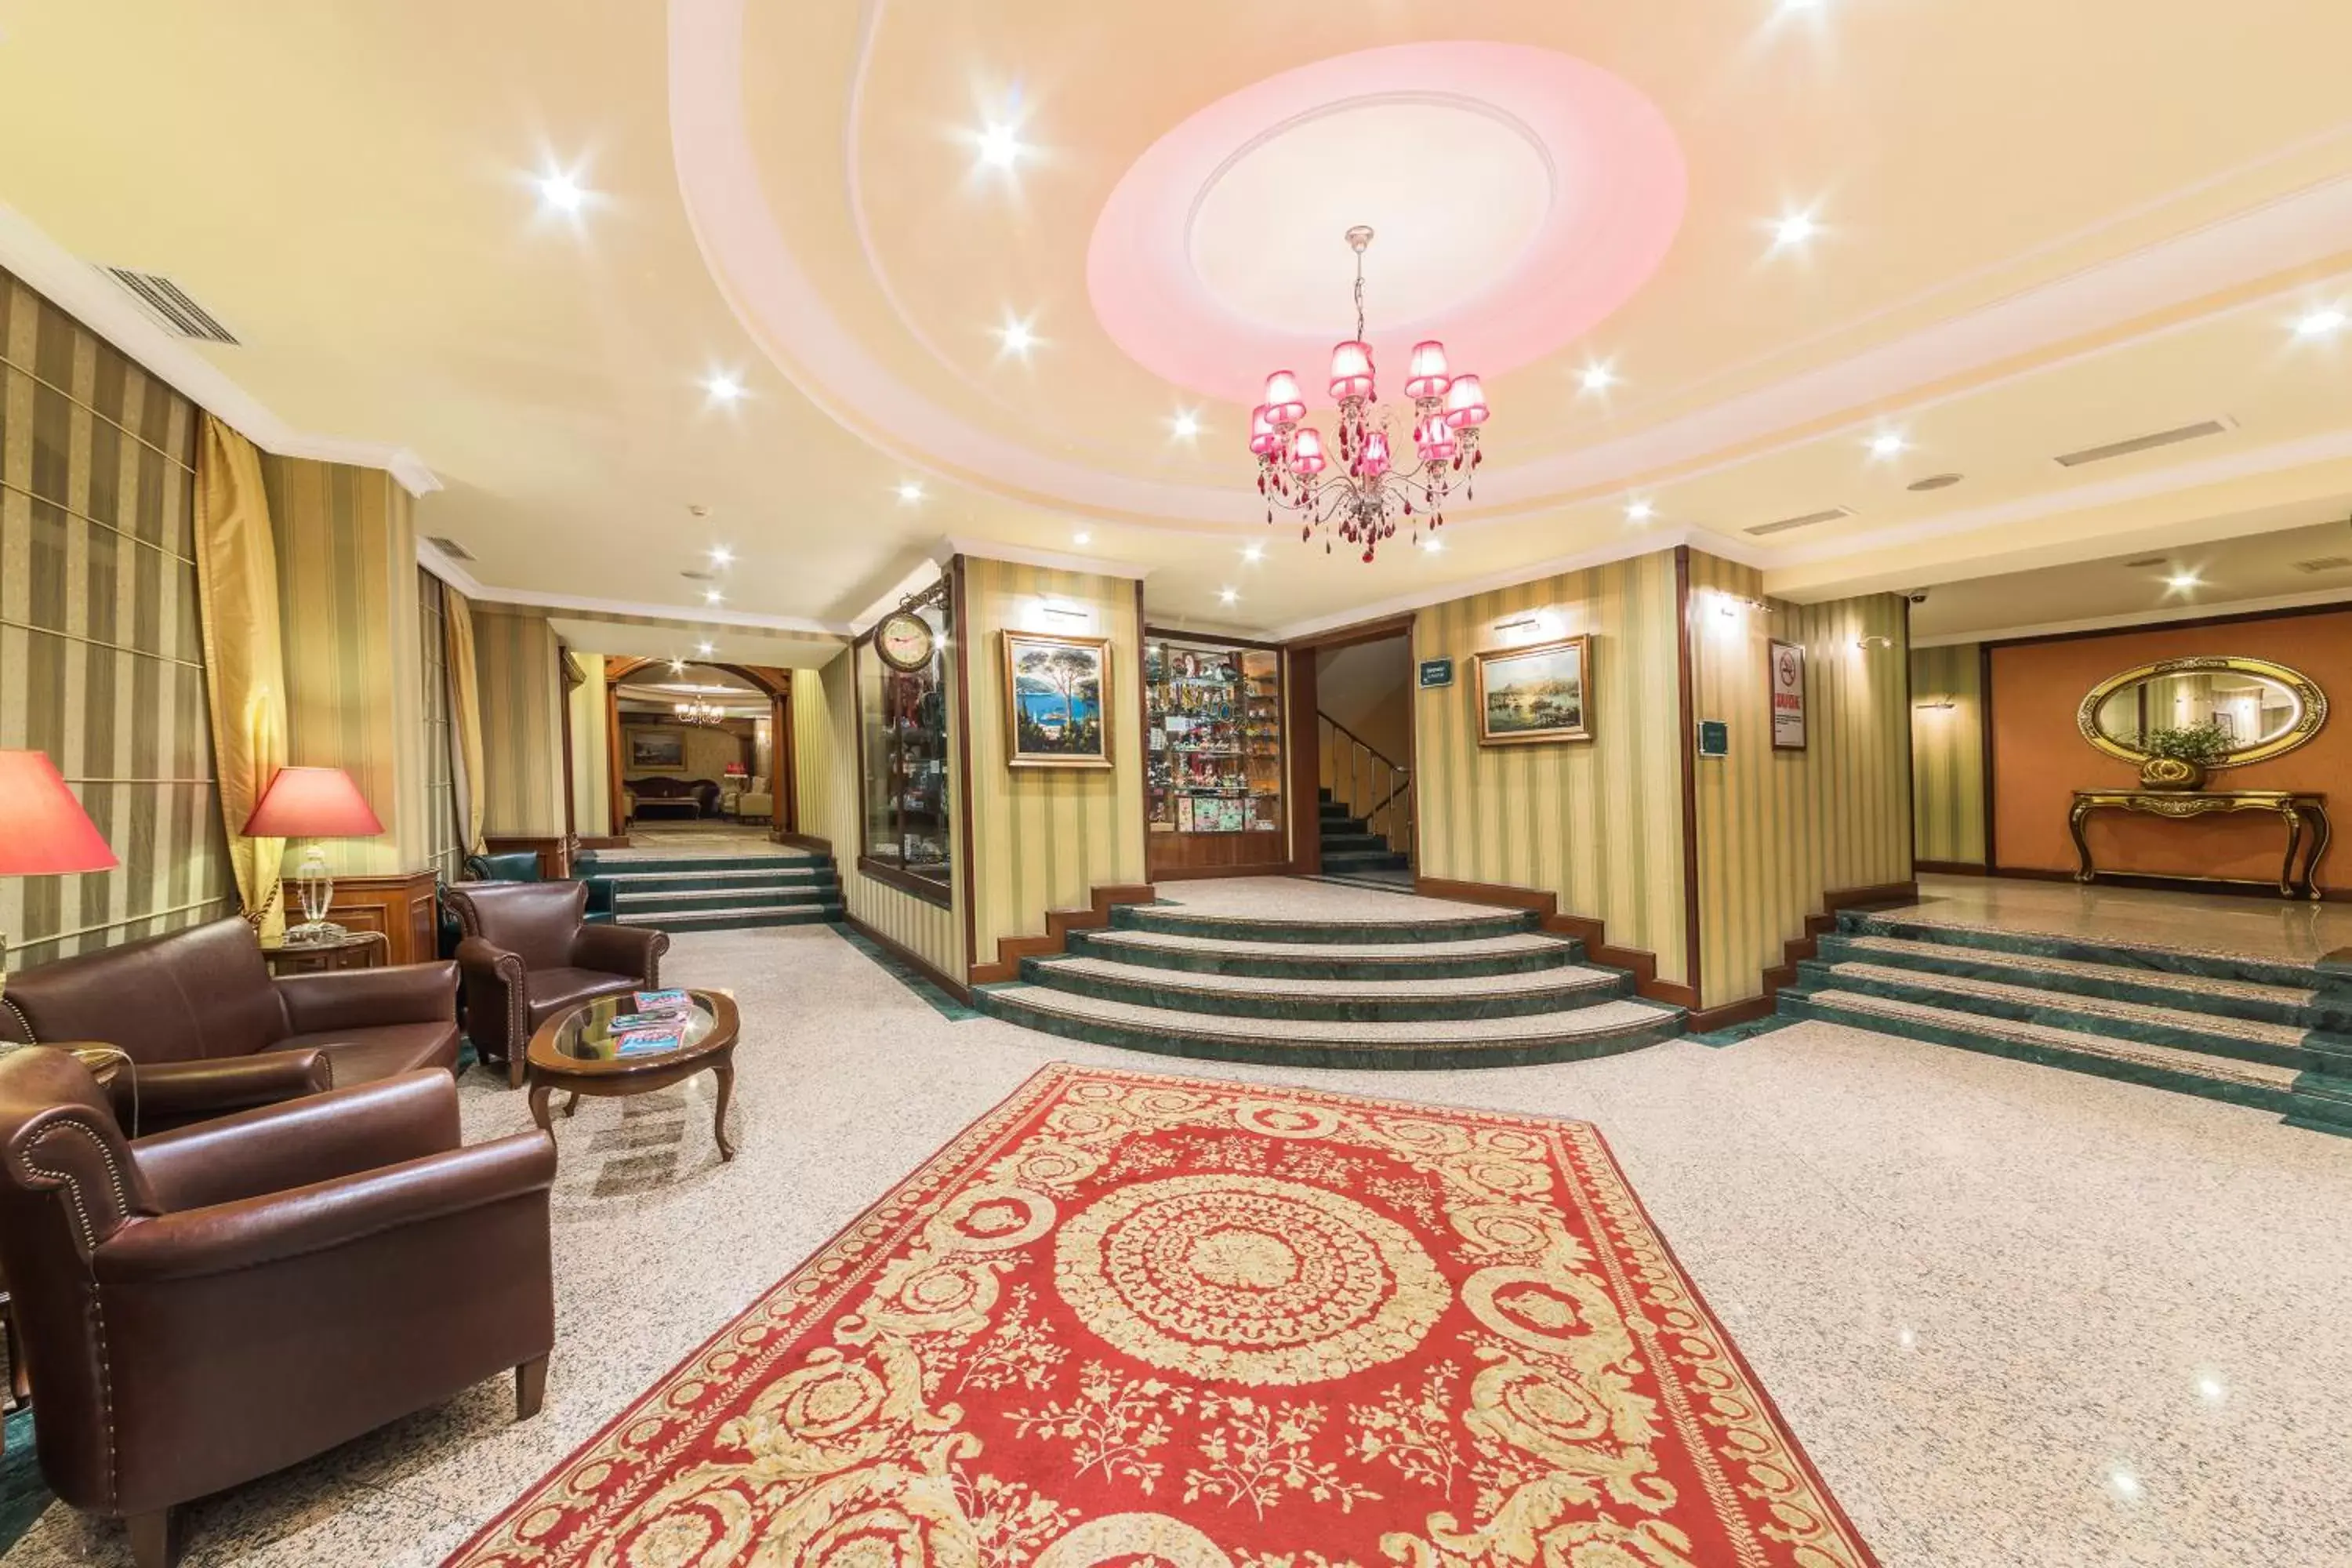 Lobby or reception, Lobby/Reception in Grand Yavuz Hotel Sultanahmet